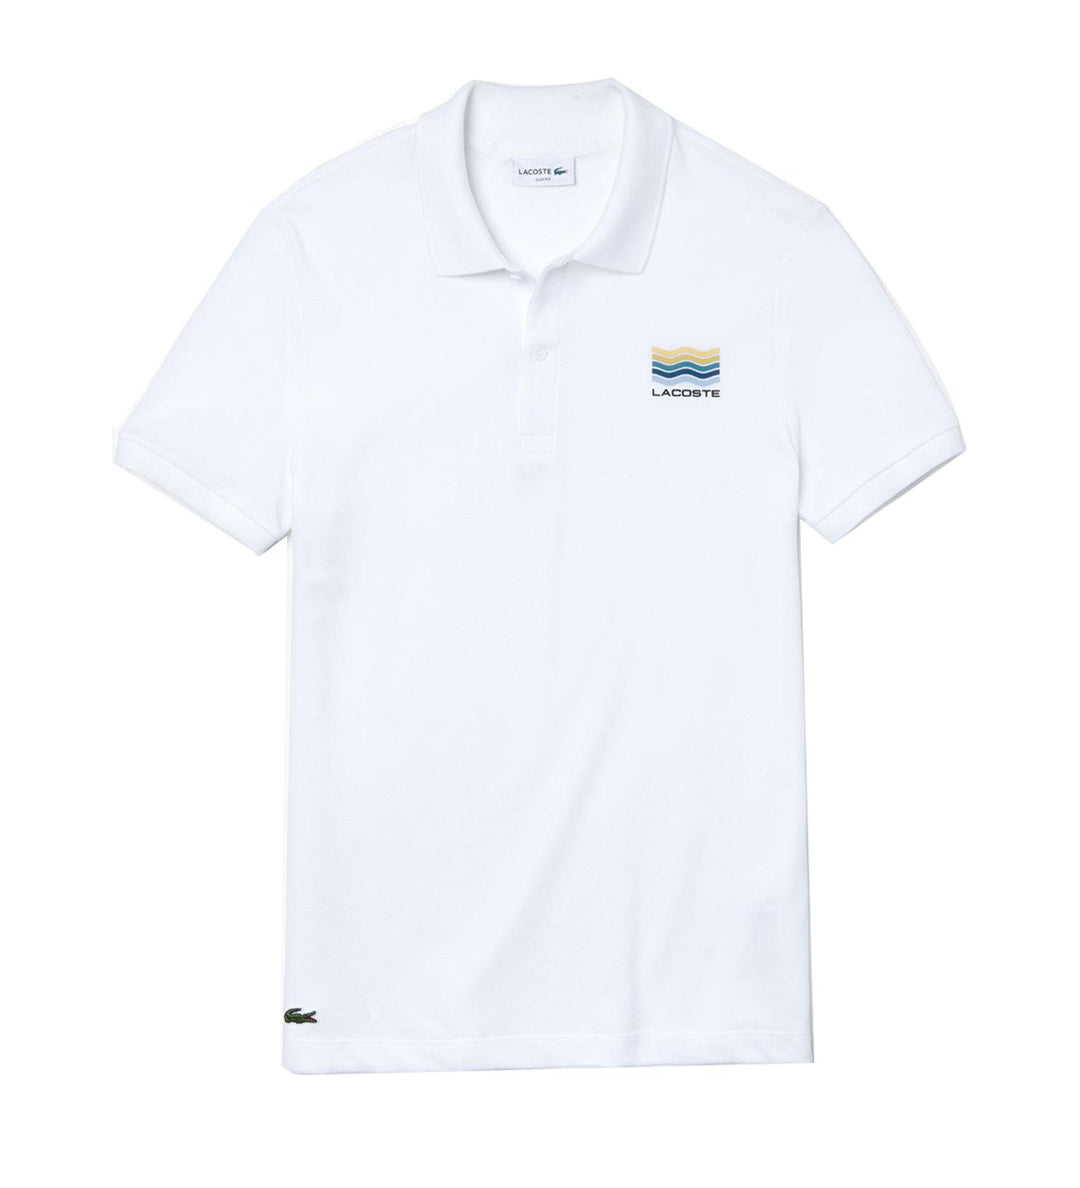 Men's Slim-Fit Cotton Petit Piqué Polo Shirt With A Colorful Print - Ph4270